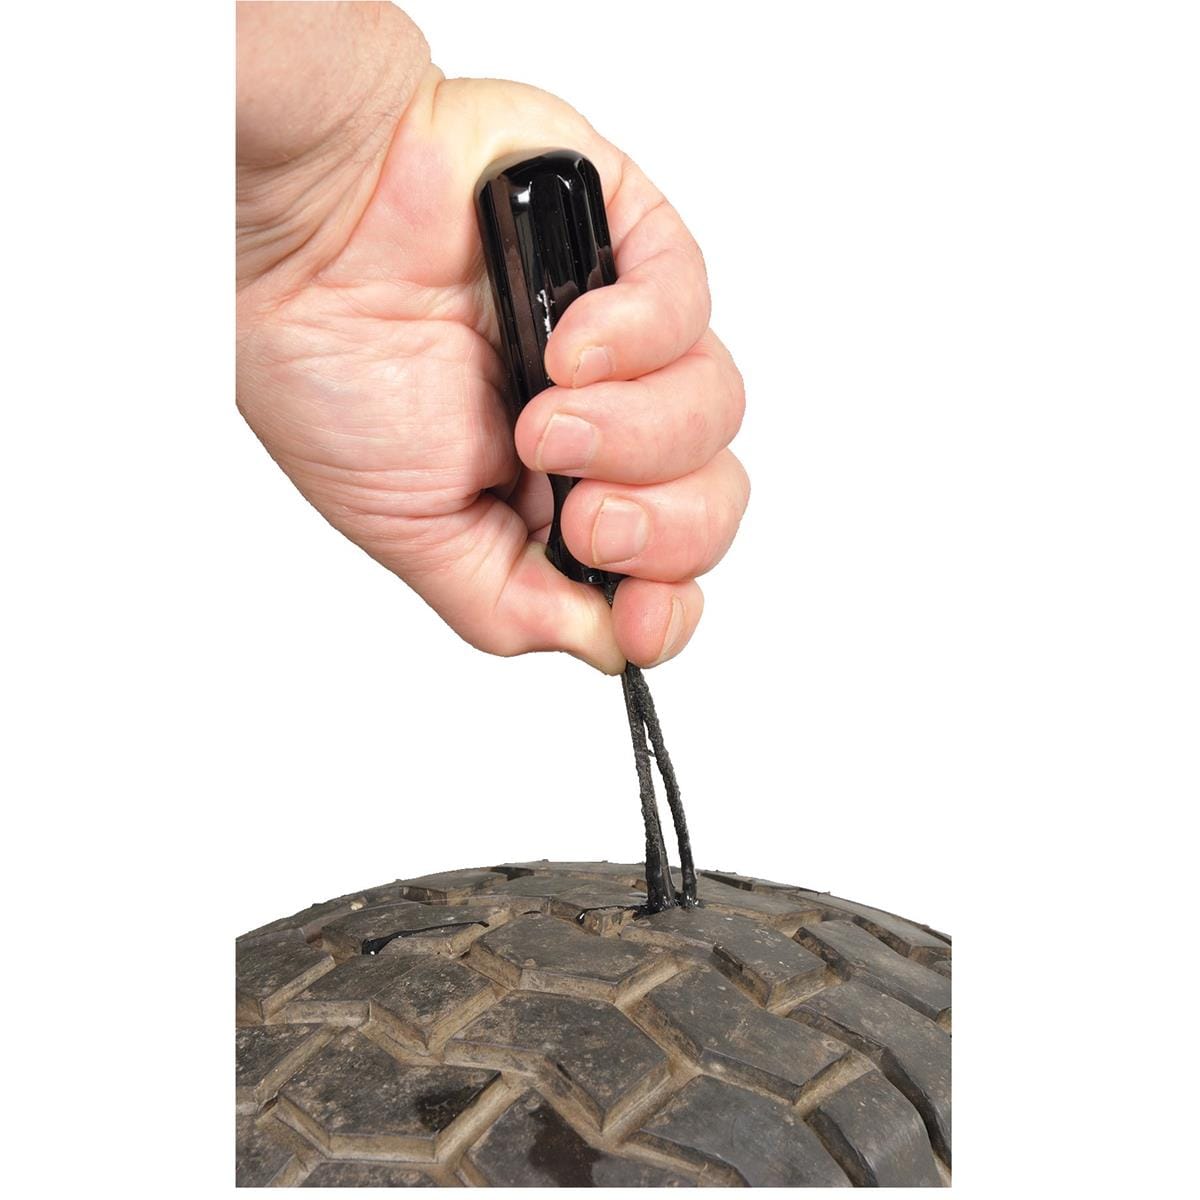 Versa-Tire Medium Repair Kit